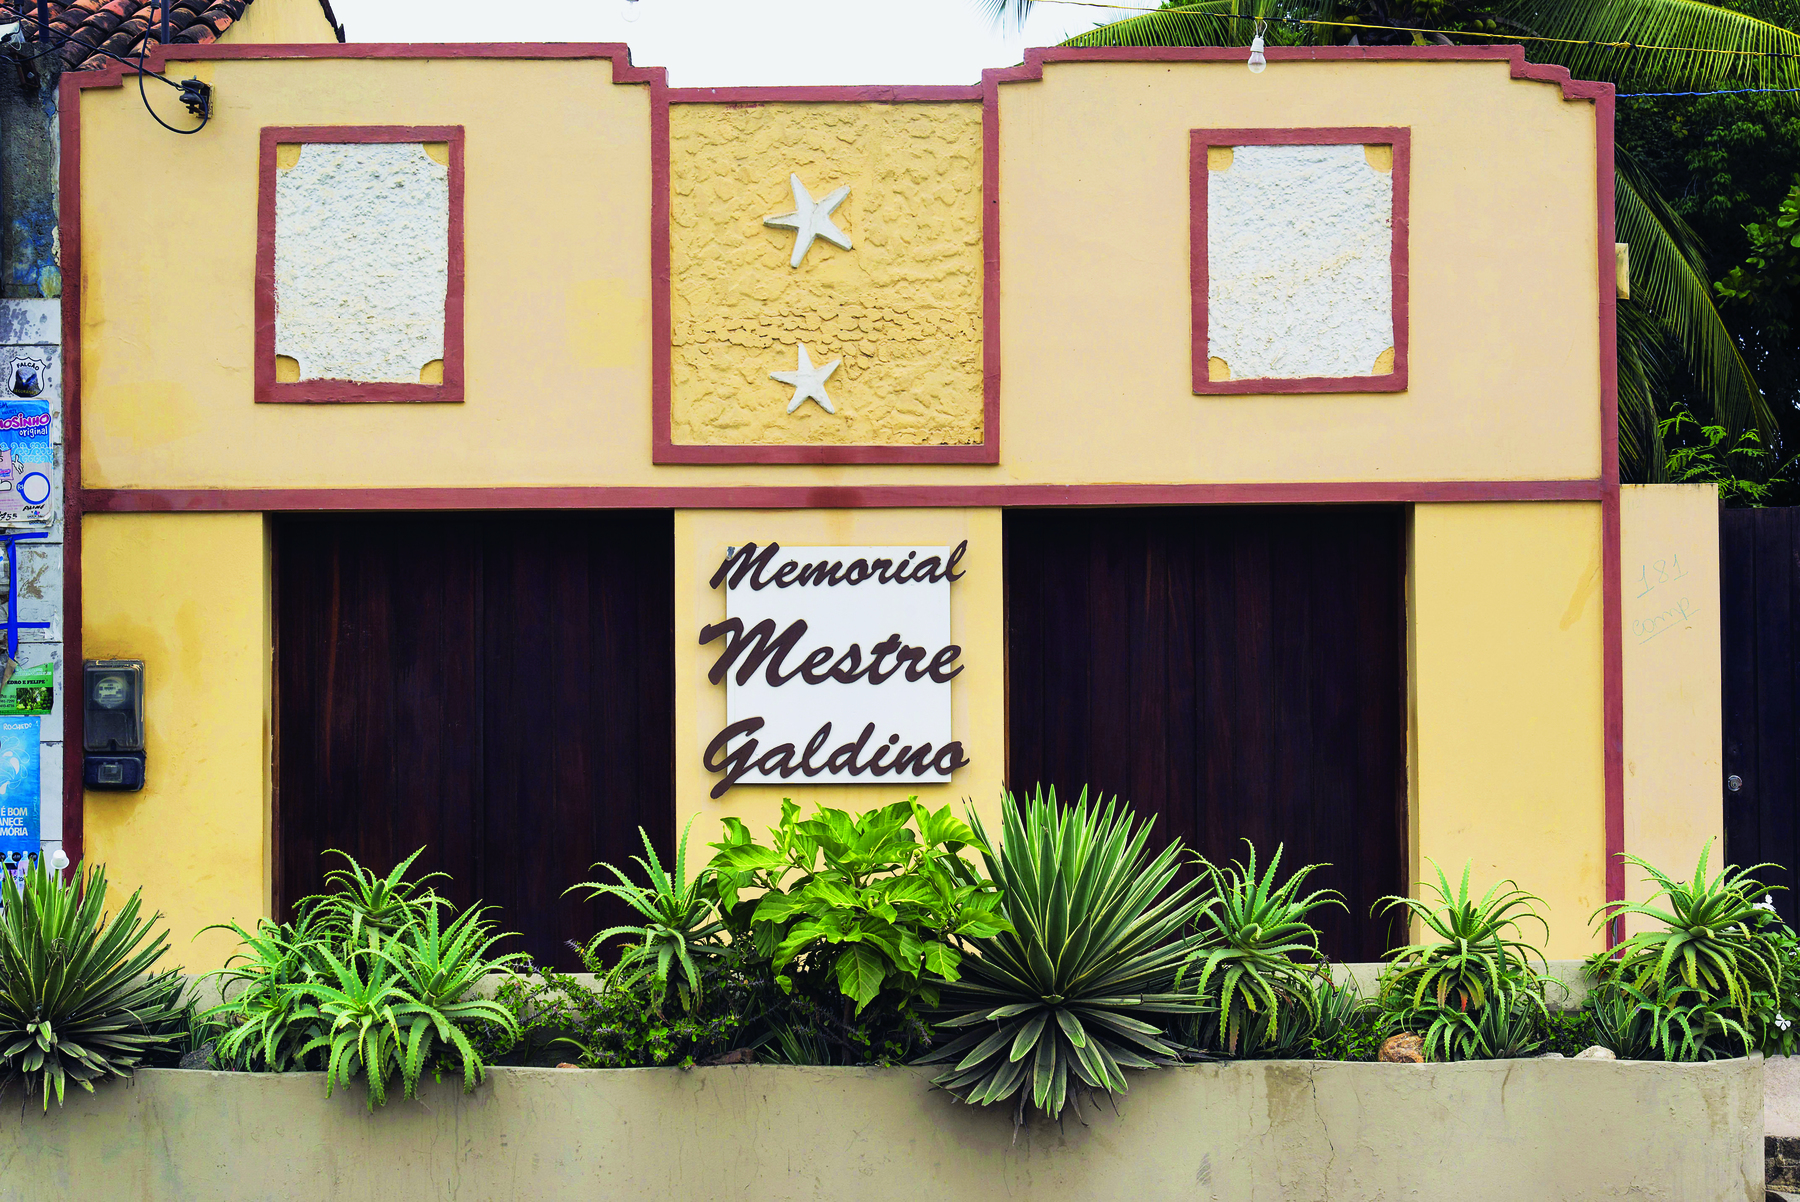 Fotografia. Vista da fachada central de uma pequena casa, com paredes amarelas, duas entradas laterais marrons, diversas plantas no solo, enfileiradas, e o texto: 'Memorial Mestre Galdino'.